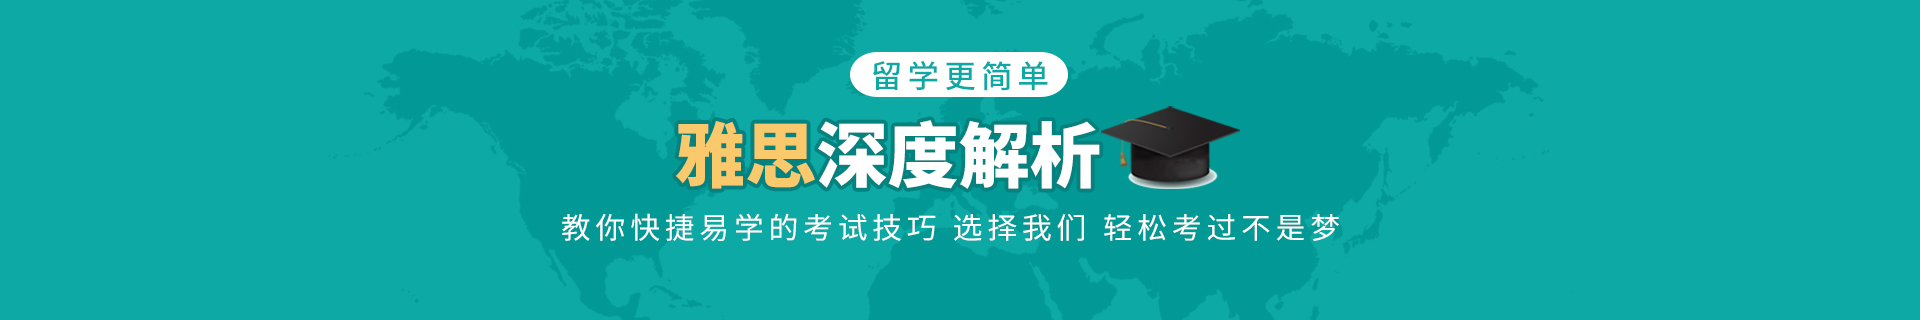 上海松江环球教育培训机构